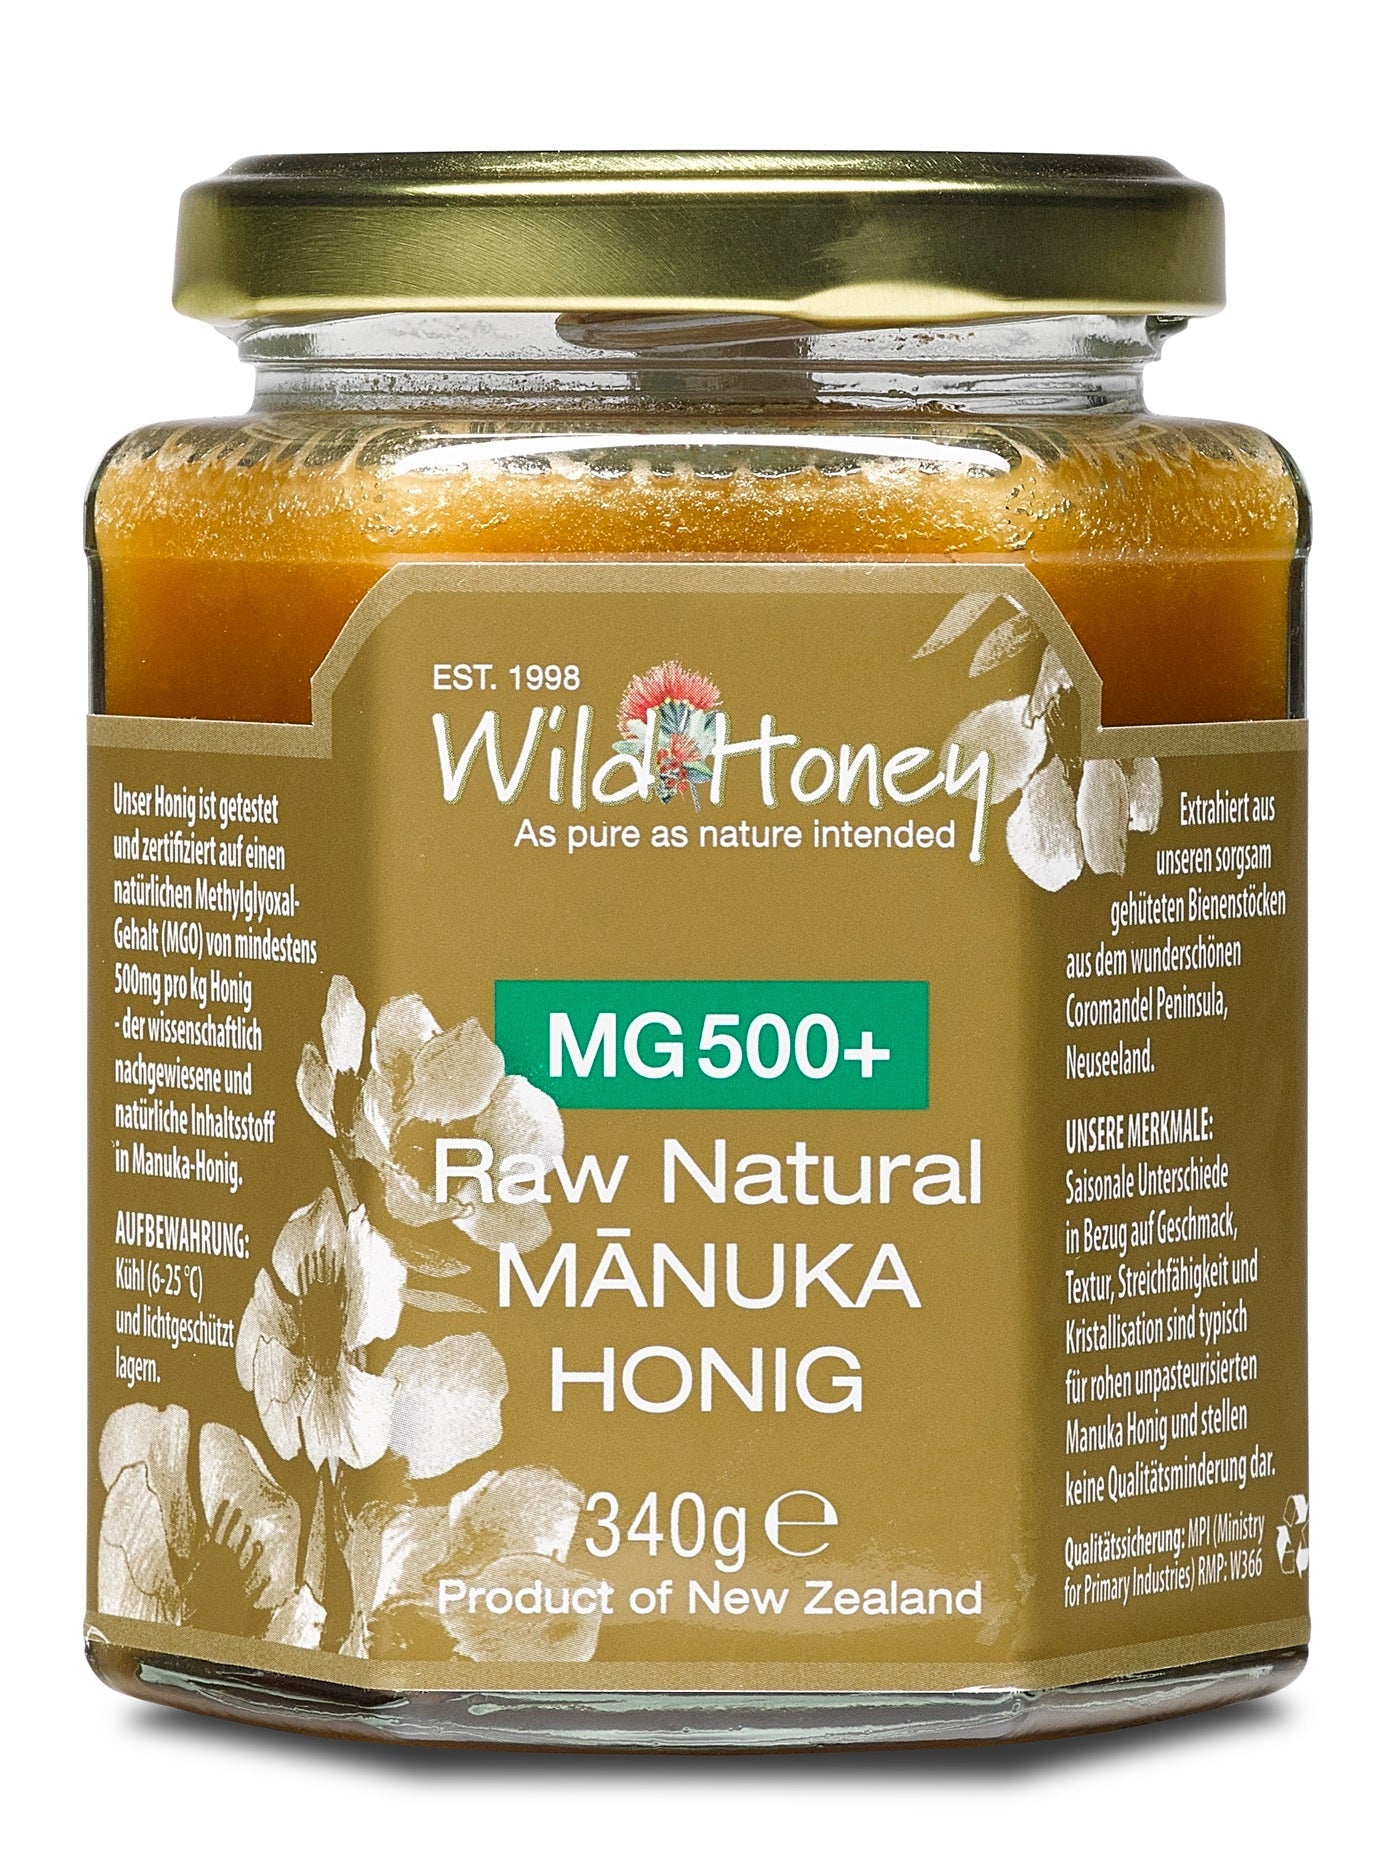 Manuka Honig MGO 500+ - Wild Honey Trade GmbH